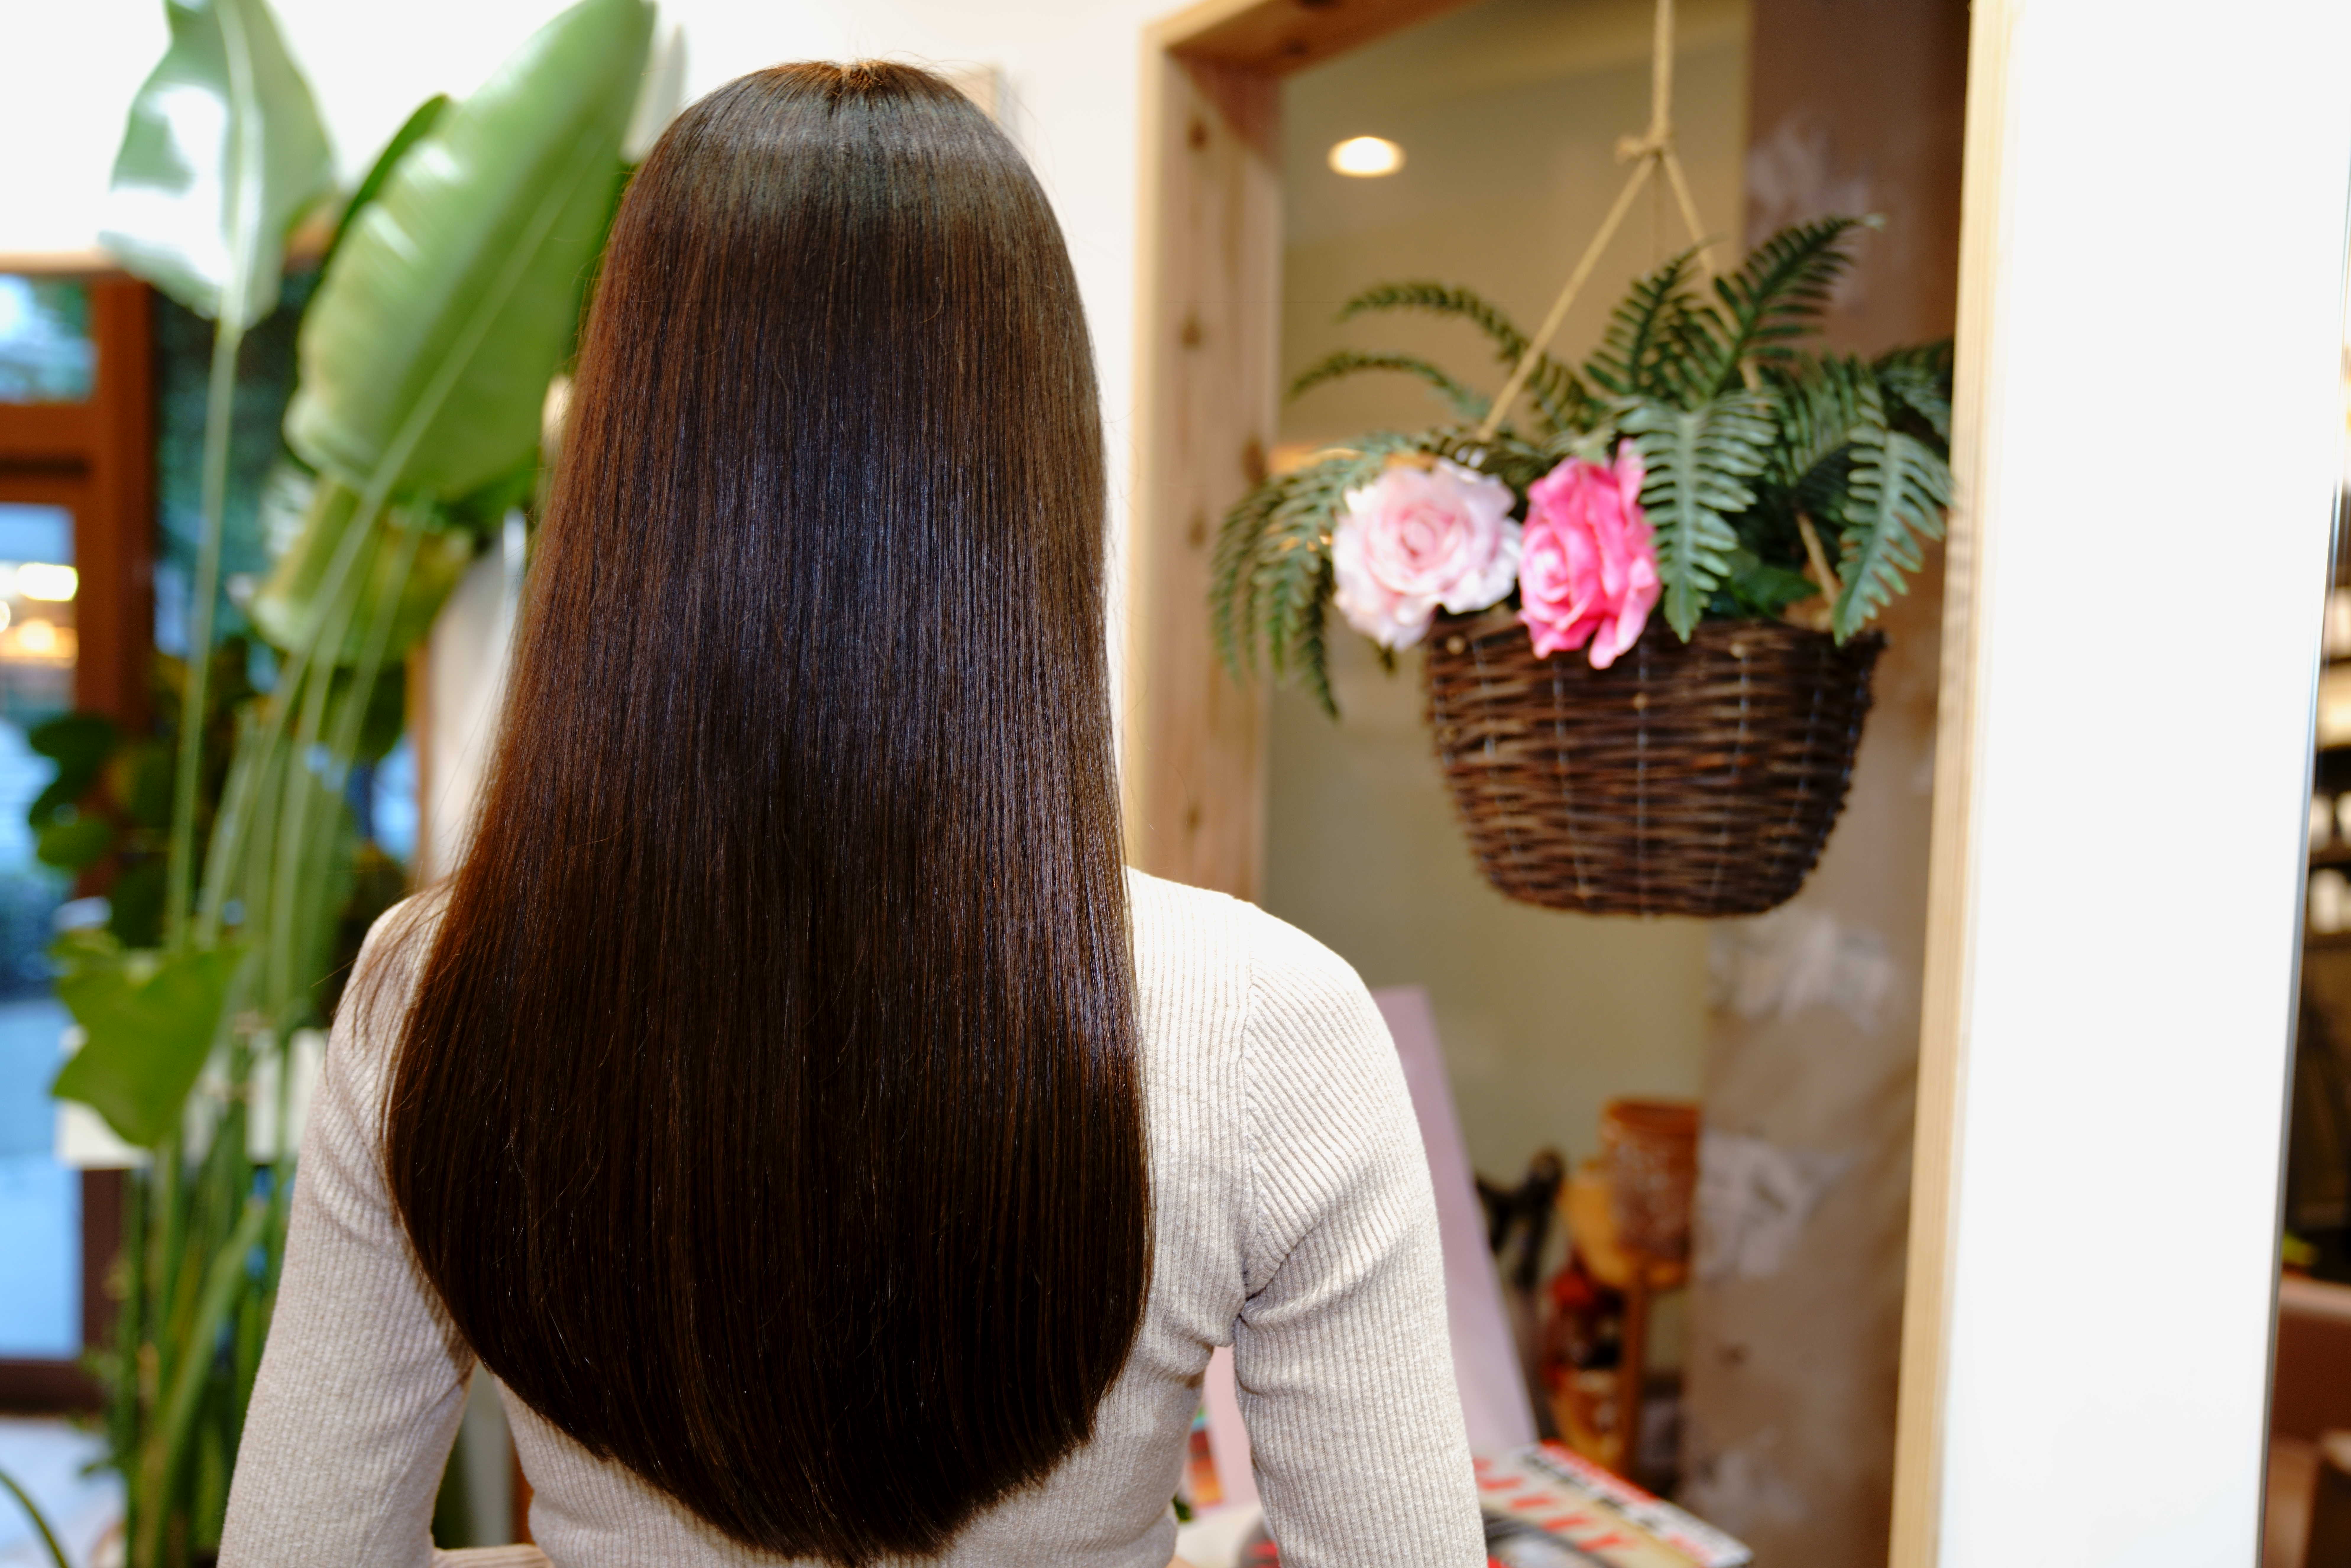 Hair Garden RePURE【ヘアガーデンリピュア】のスタイル紹介。ヘアマゼラントリートメント